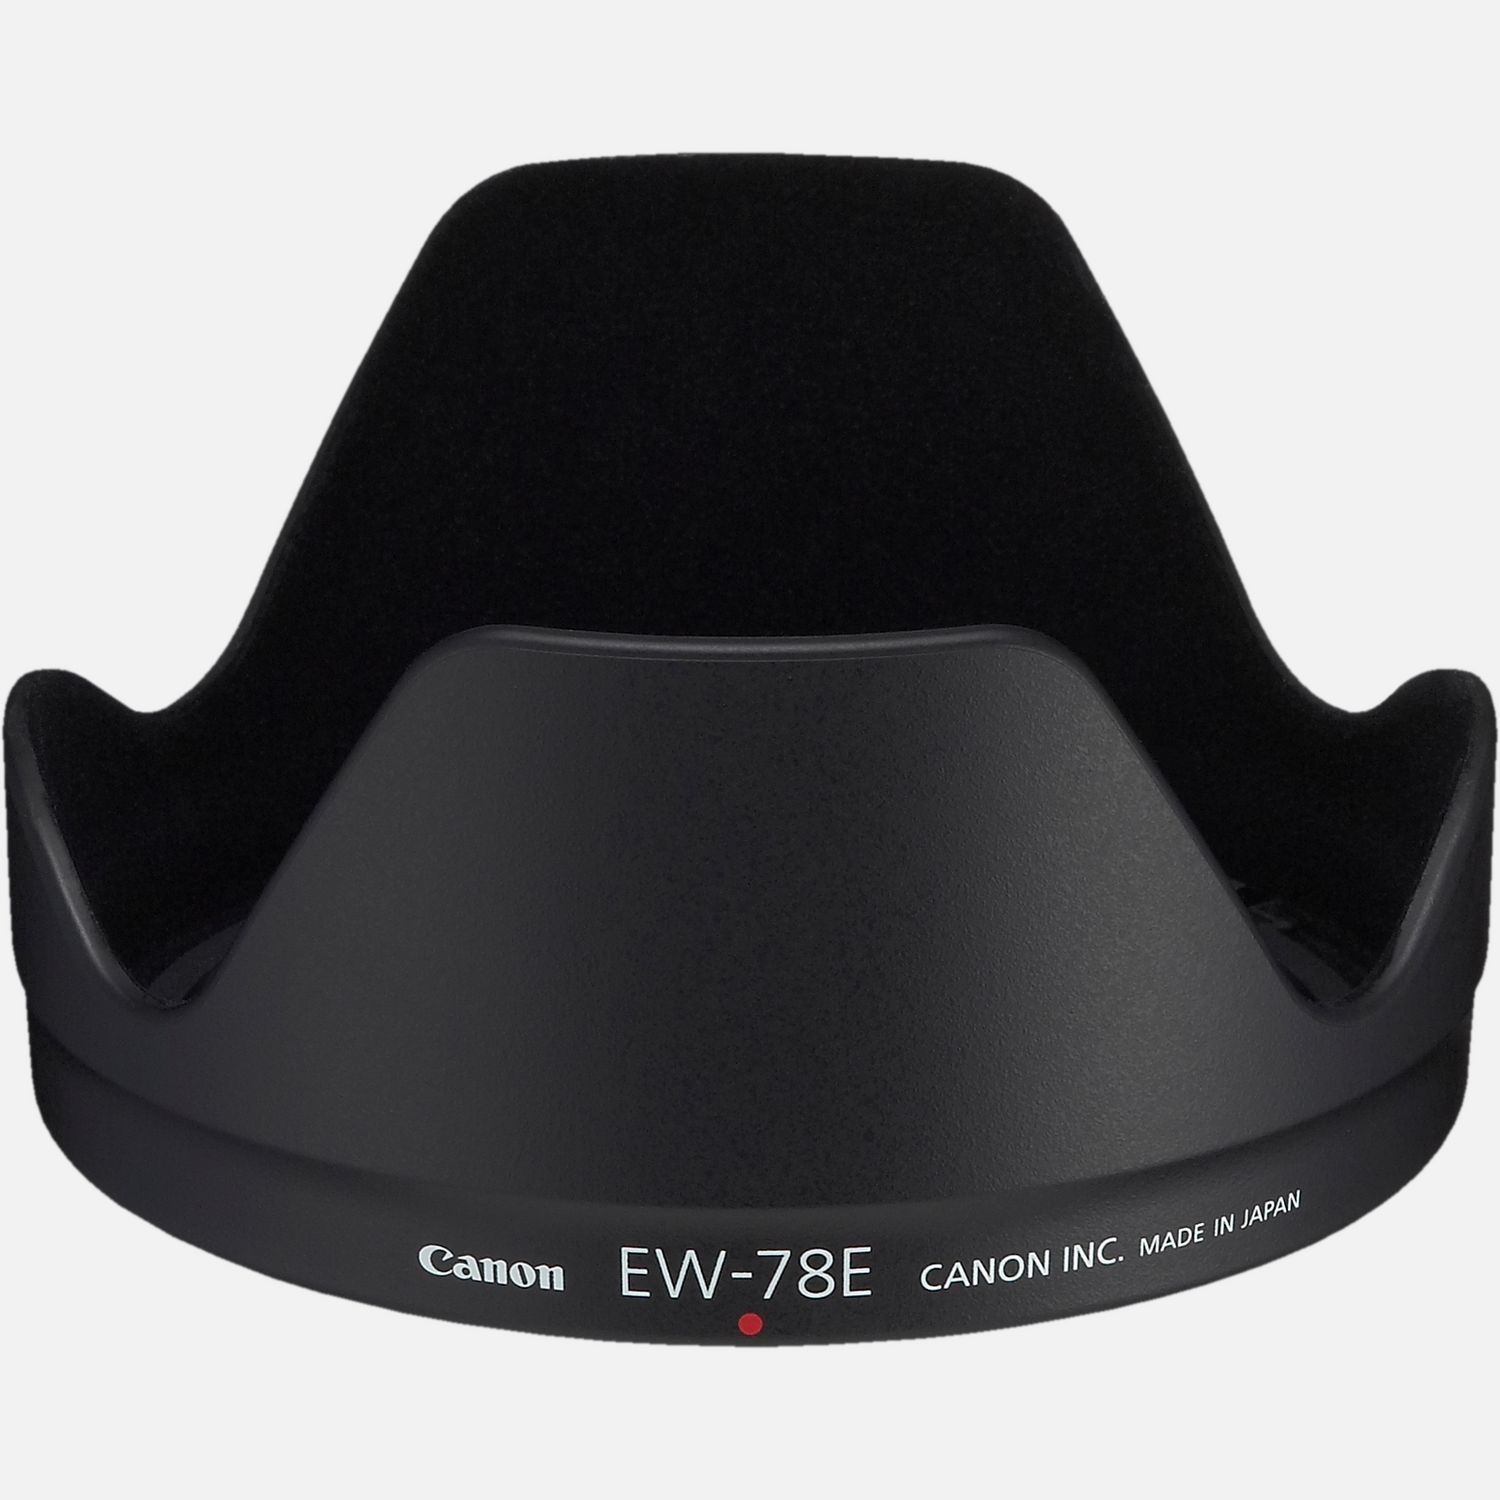 Passt auf das Objektiv EF-S 15-85mm 1:3,5-5,6 IS USM, reduziert Reflexionen, die durch direkt auf die Frontlinse auffallendes Licht hervorgerufen werden.      Kompatibilitt       EF-S 1585mm f/3.55.6 IS USM